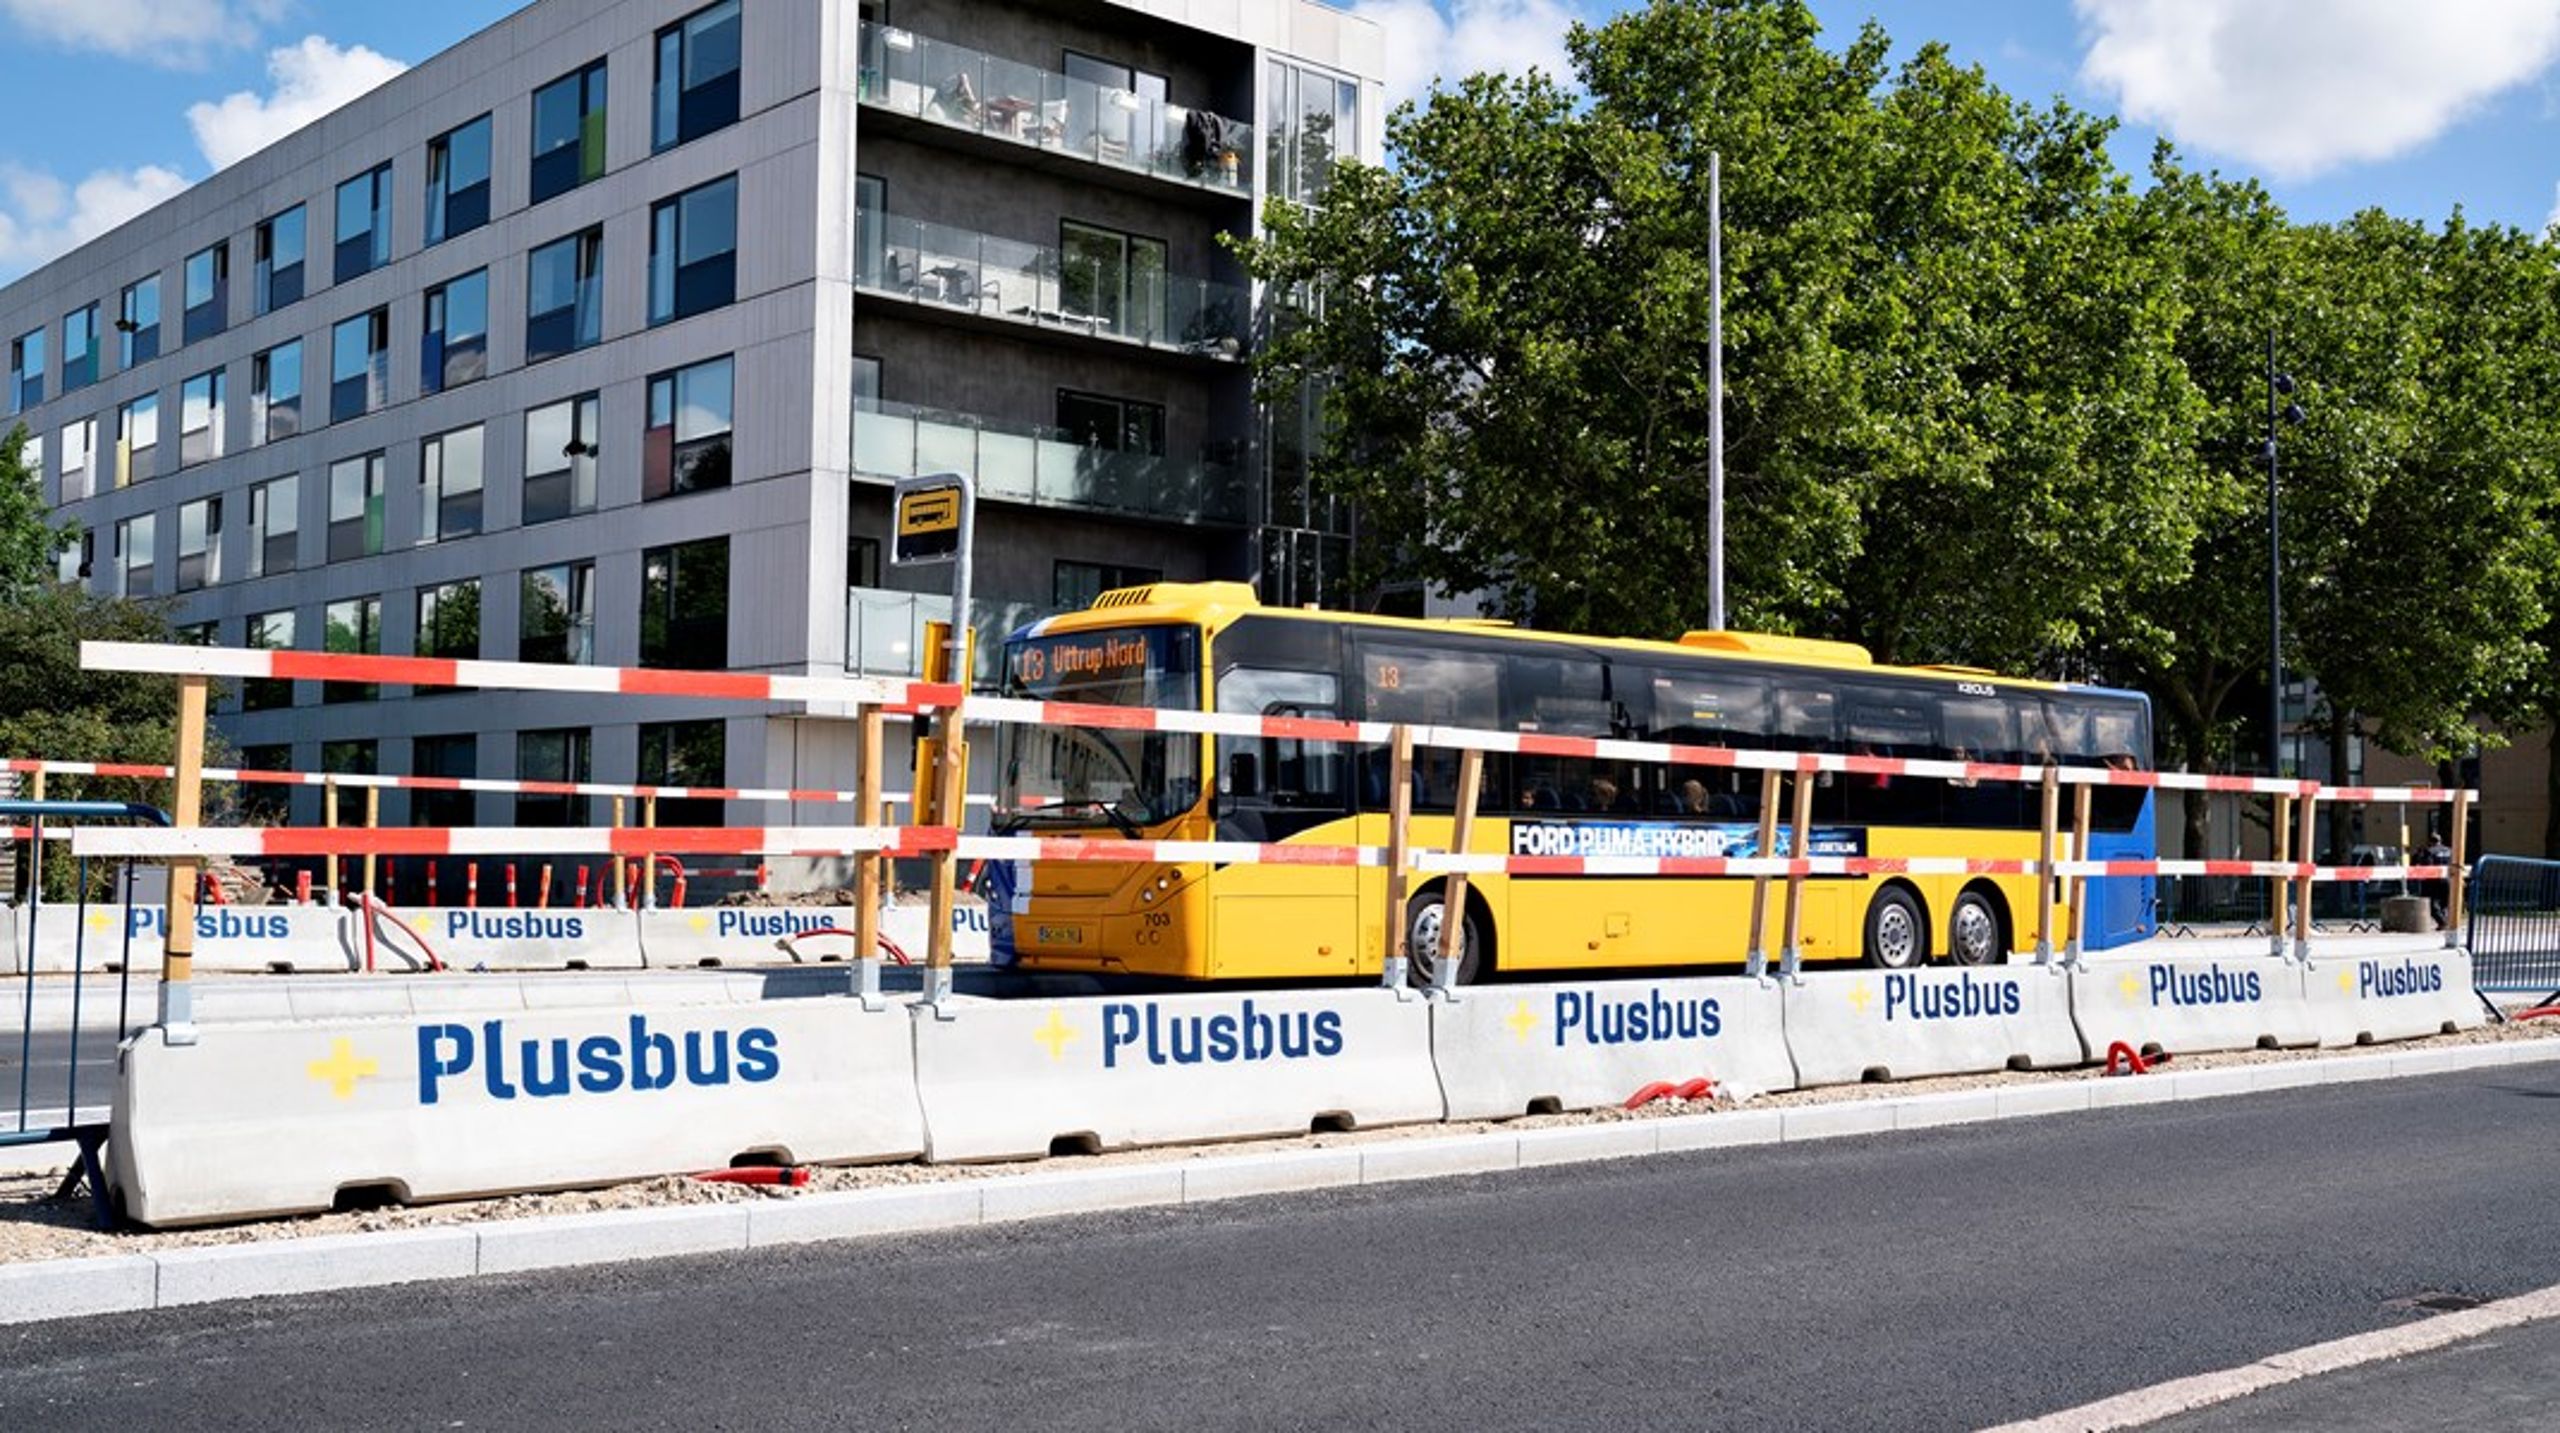 Hvis vi vil etablere en direkte linje fra Danmark til et bestemt sted i Europa, kan vi gøre det allerede i morgen med bussen. Derfor er der store gevinster ved at satse mere på bustransport på EU-plan, skriver Jens Hvid Bang.